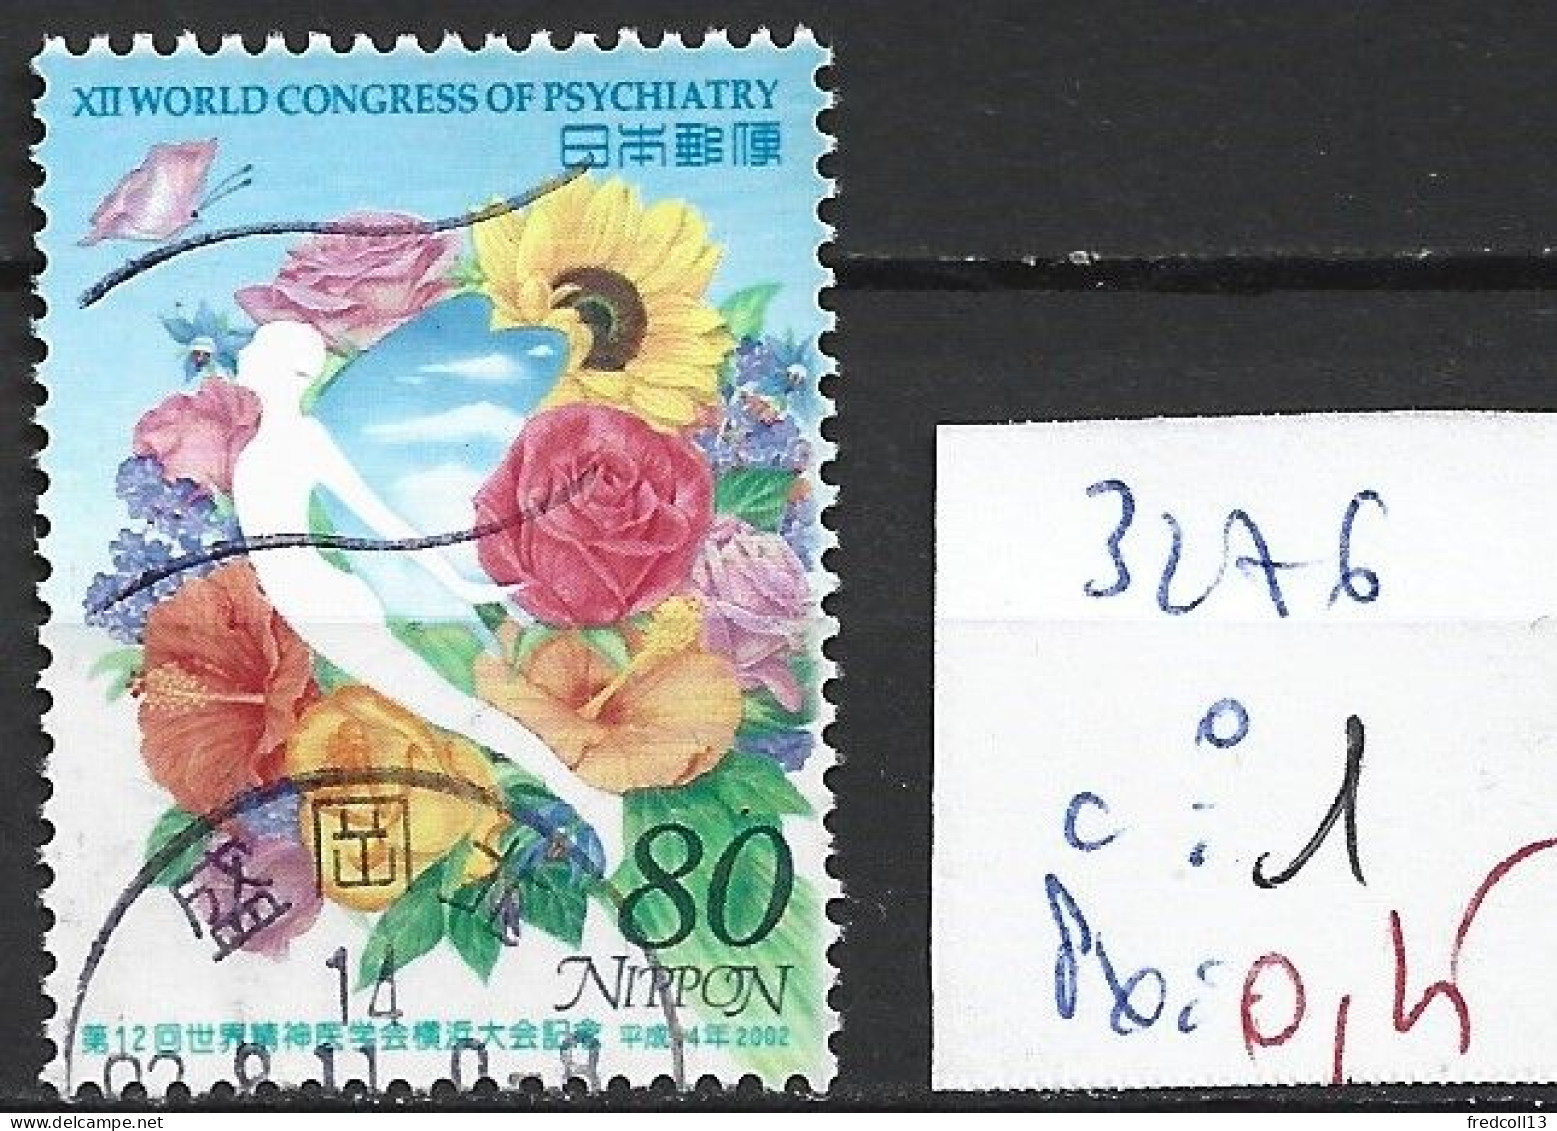 JAPON 3276 Oblitéré Côte 1 € - Used Stamps